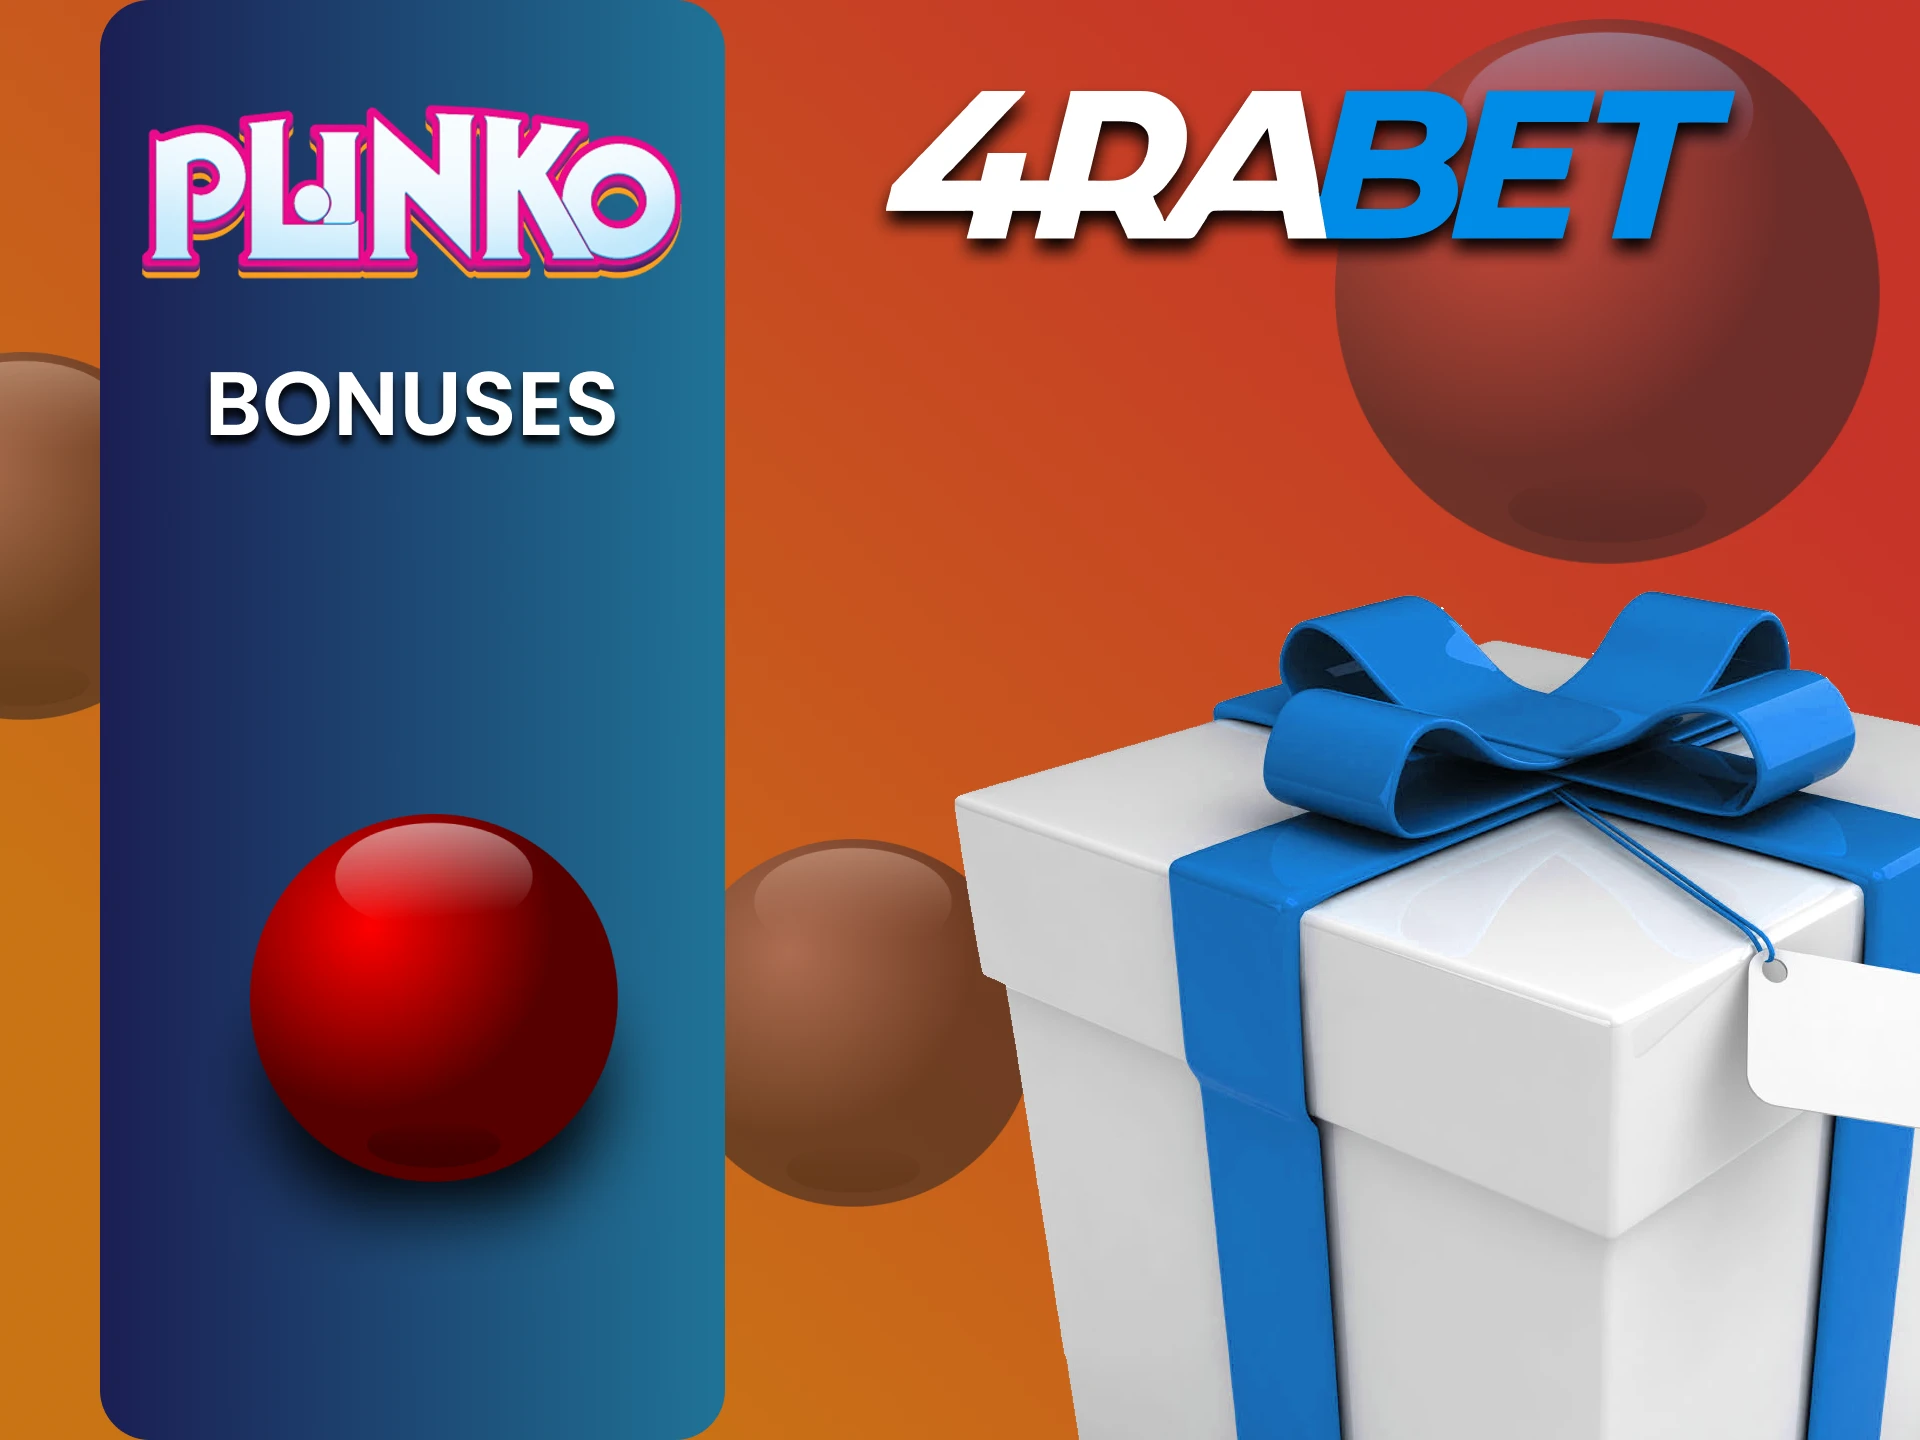 4rabet gives bonuses for Plinko players.